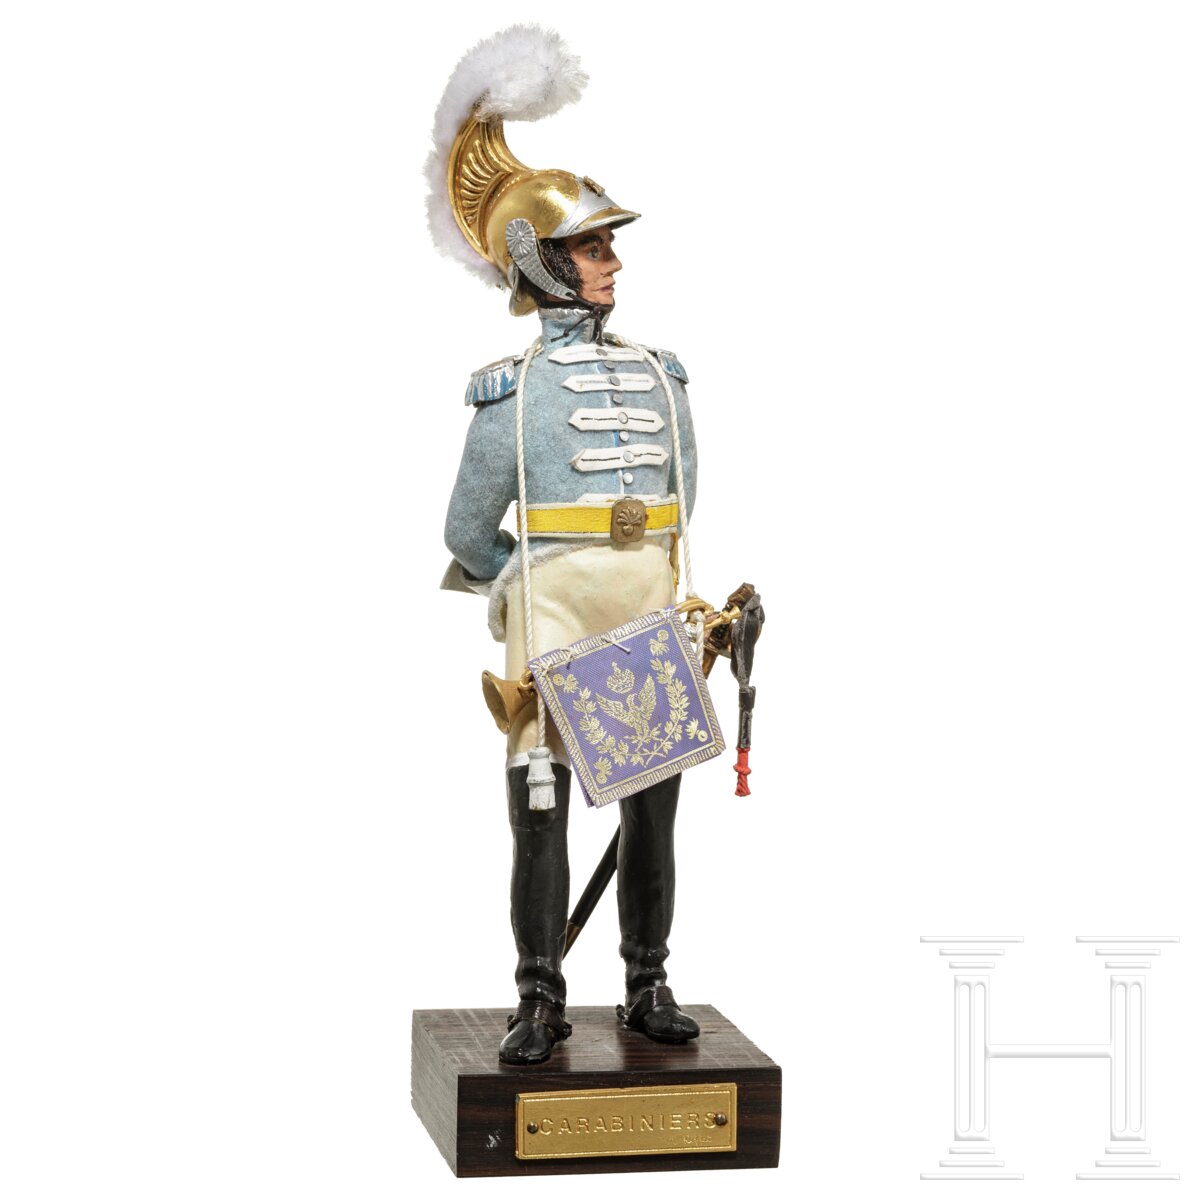 Trompeter der Carabiniers um 1811 - Uniformfigur von Marcel Riffet, 20. Jhdt. - Image 3 of 6